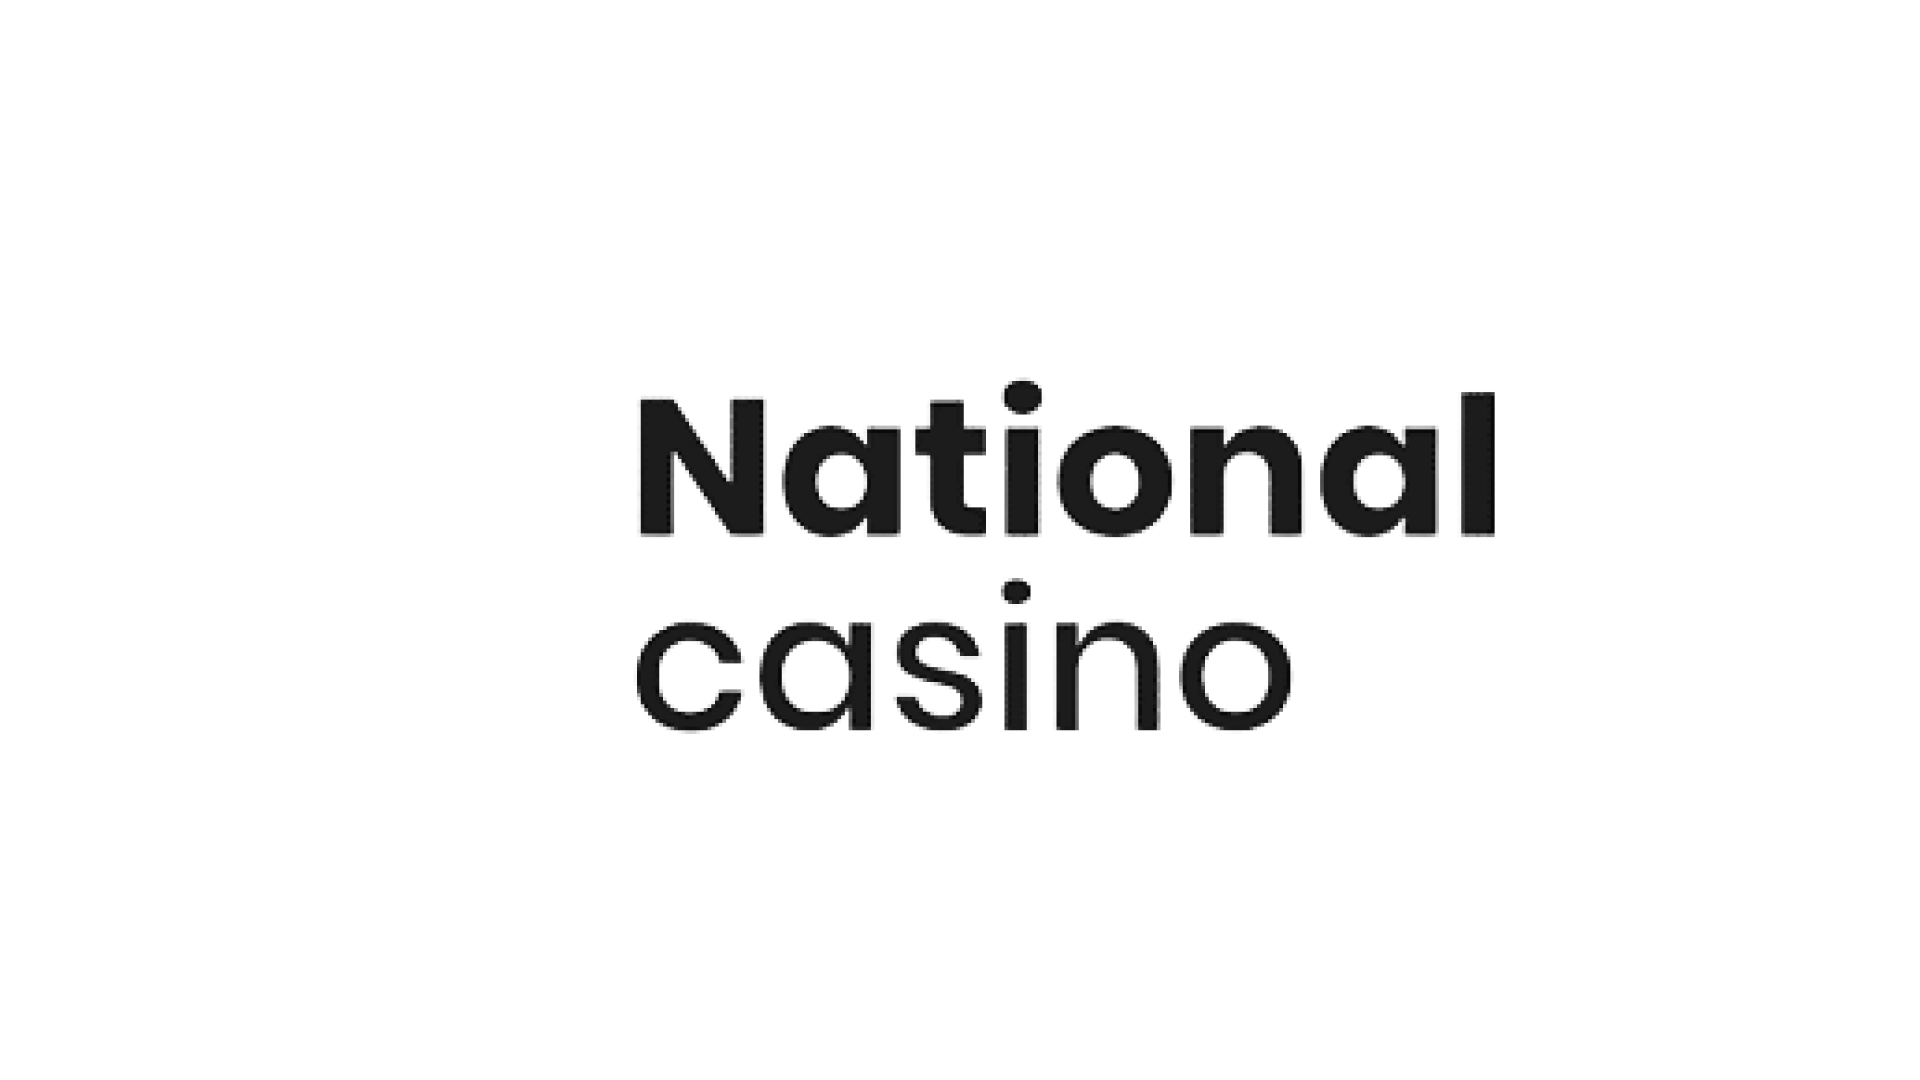 National casino